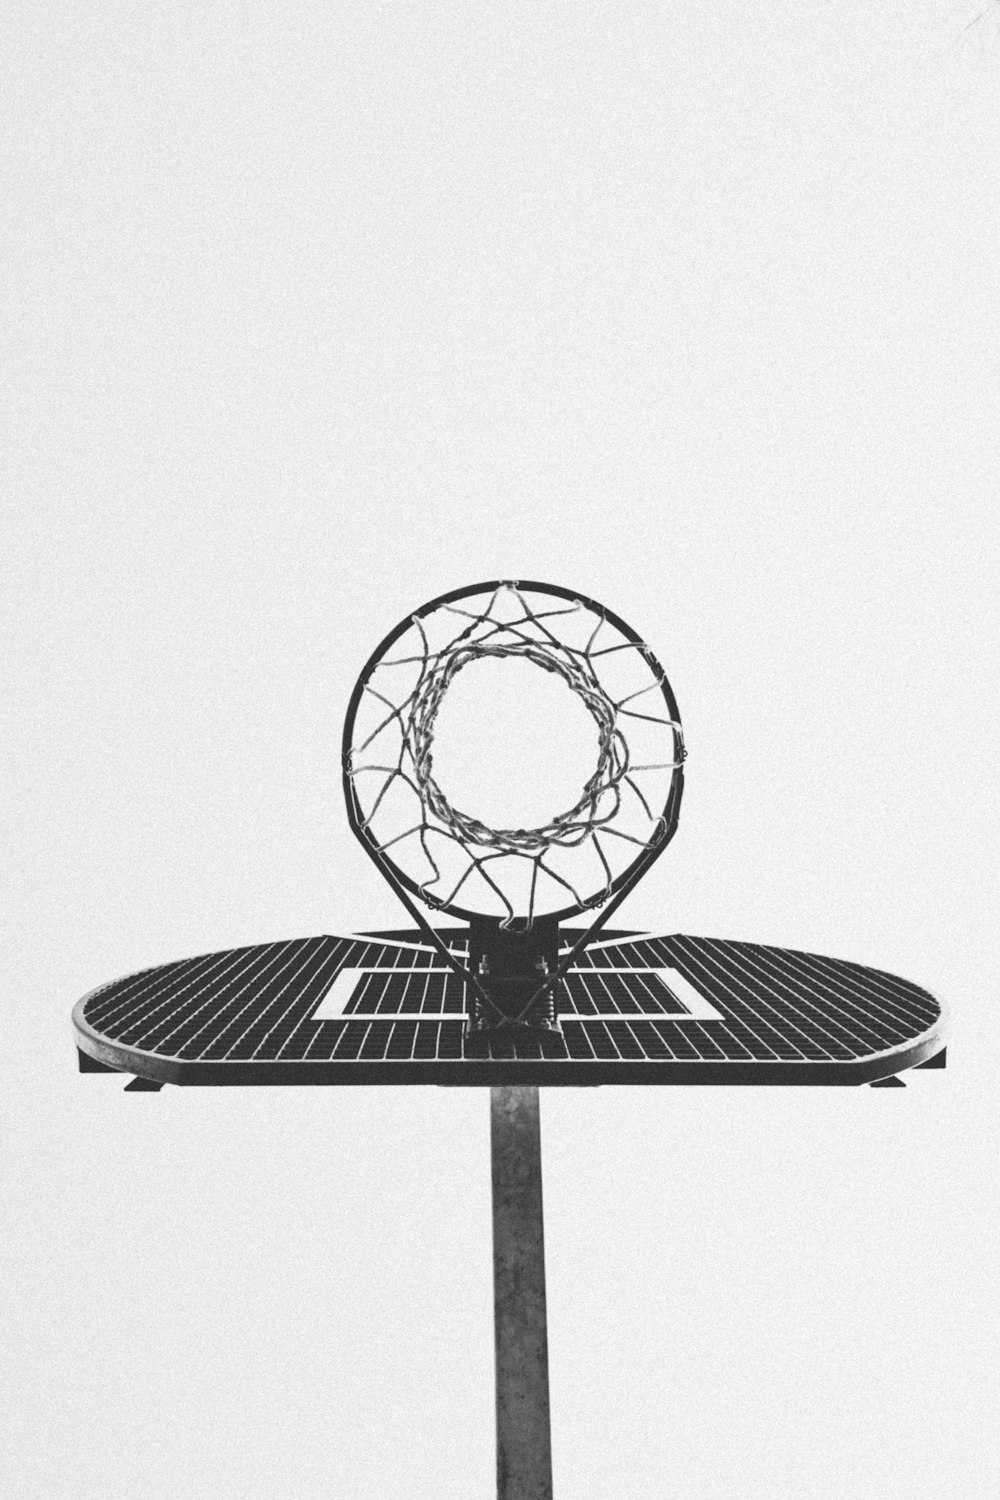 バスケットボールのフープの白黒写真